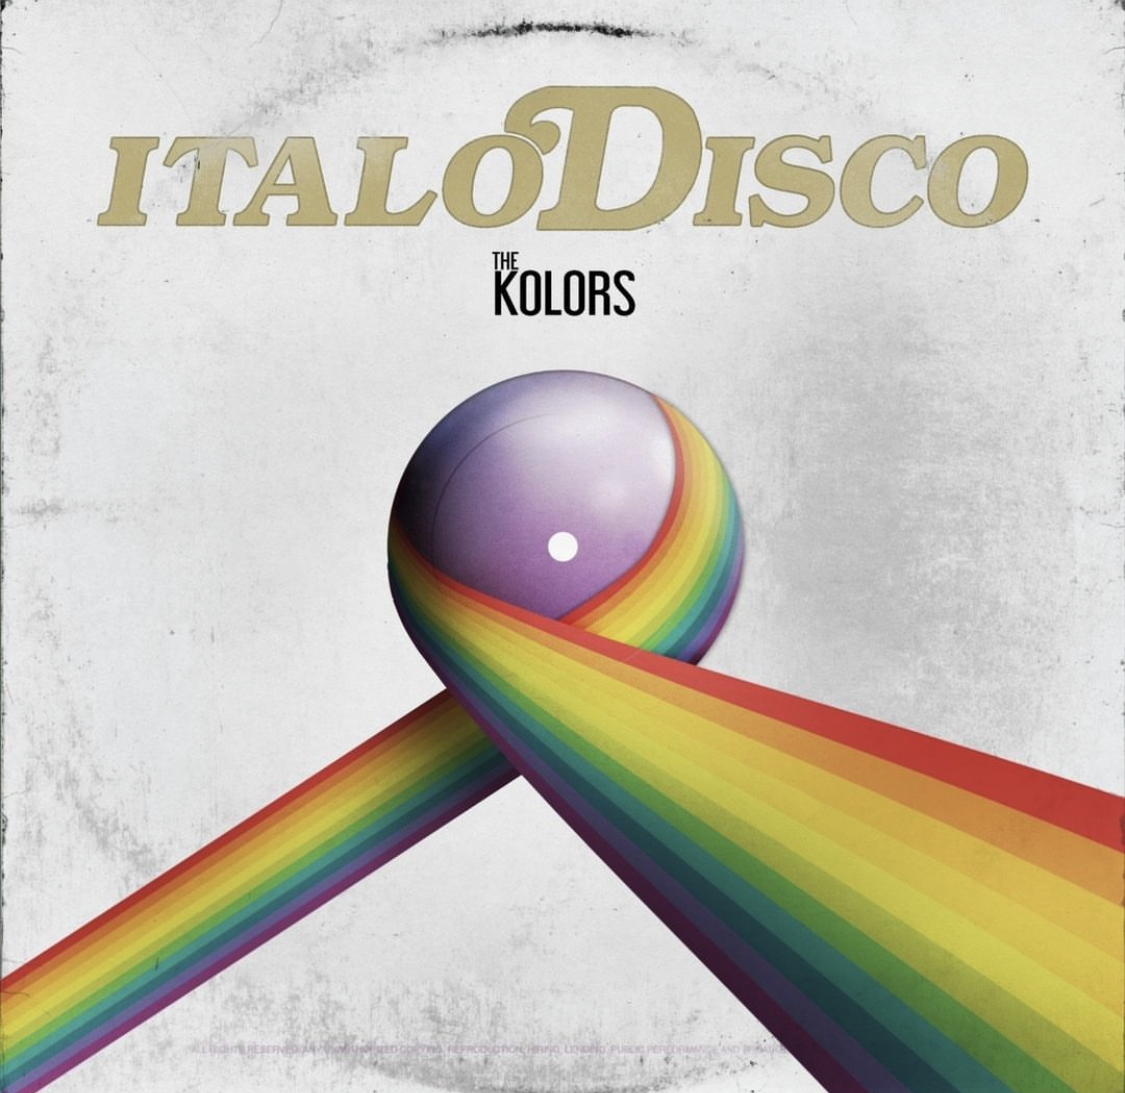 The Kolors, pubblicata "Italodisco" anche nella versione inglese: testo e audio